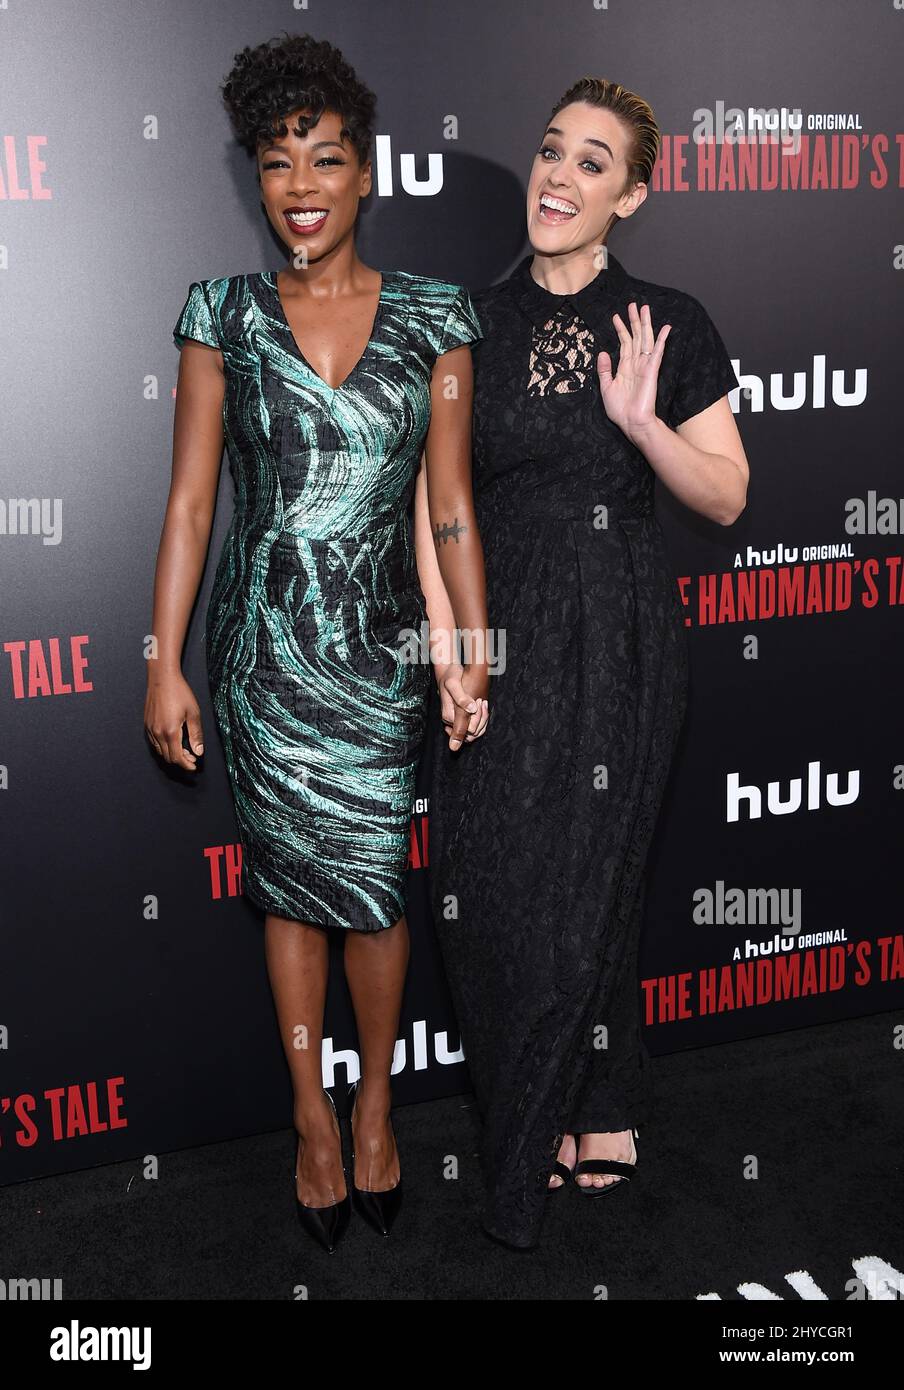 Samira Wiley et Lauren Morelli arrivent pour la première « The Handmaid's Tale » de Hulu, qui s'est tenue au Cinerama Dome Hollywood, Los Angeles, le 25 avril 2017 Banque D'Images